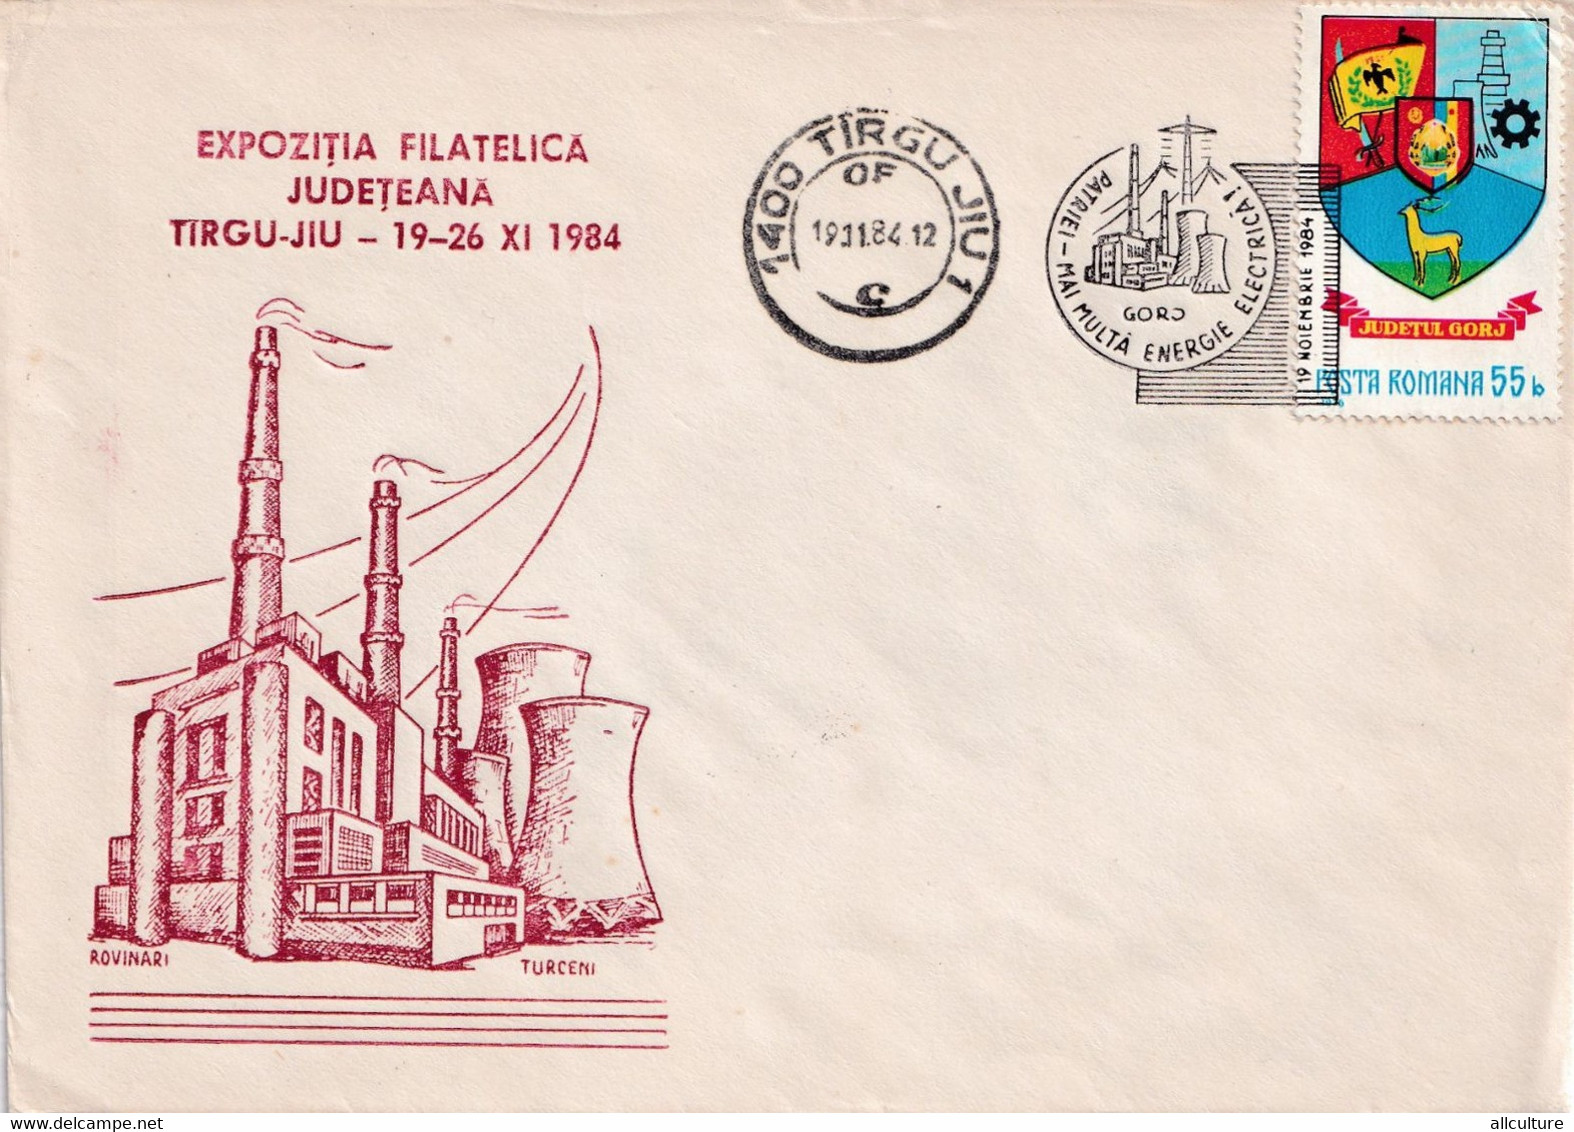 A2644 - Expozitia Filatelica Judeteana Targu-Jiu 1984, Stamp 1984 Judetul Gorj Romania - Covers & Documents